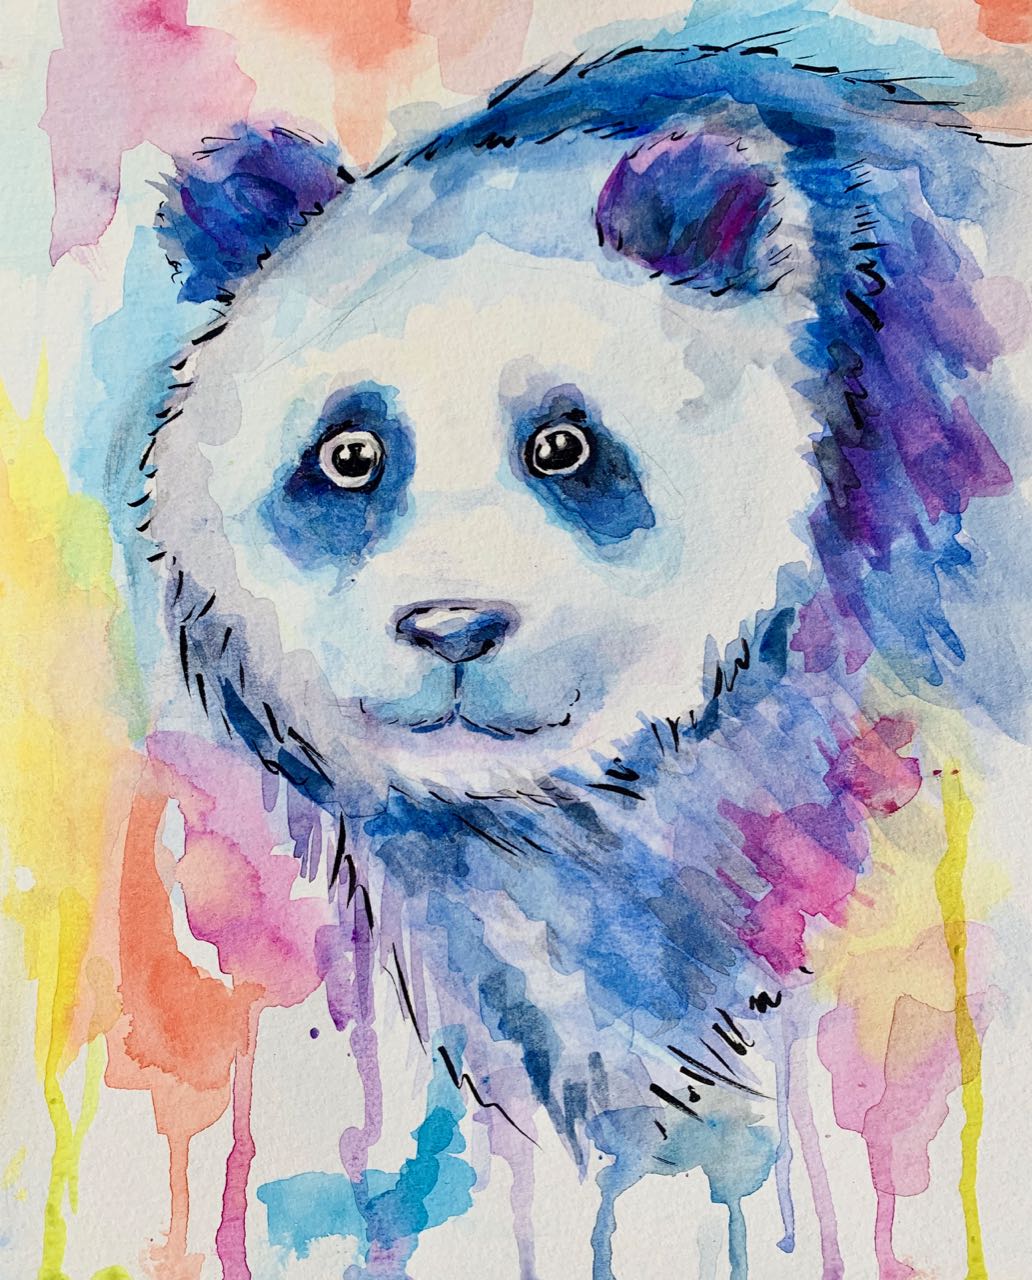 Painterly Panda